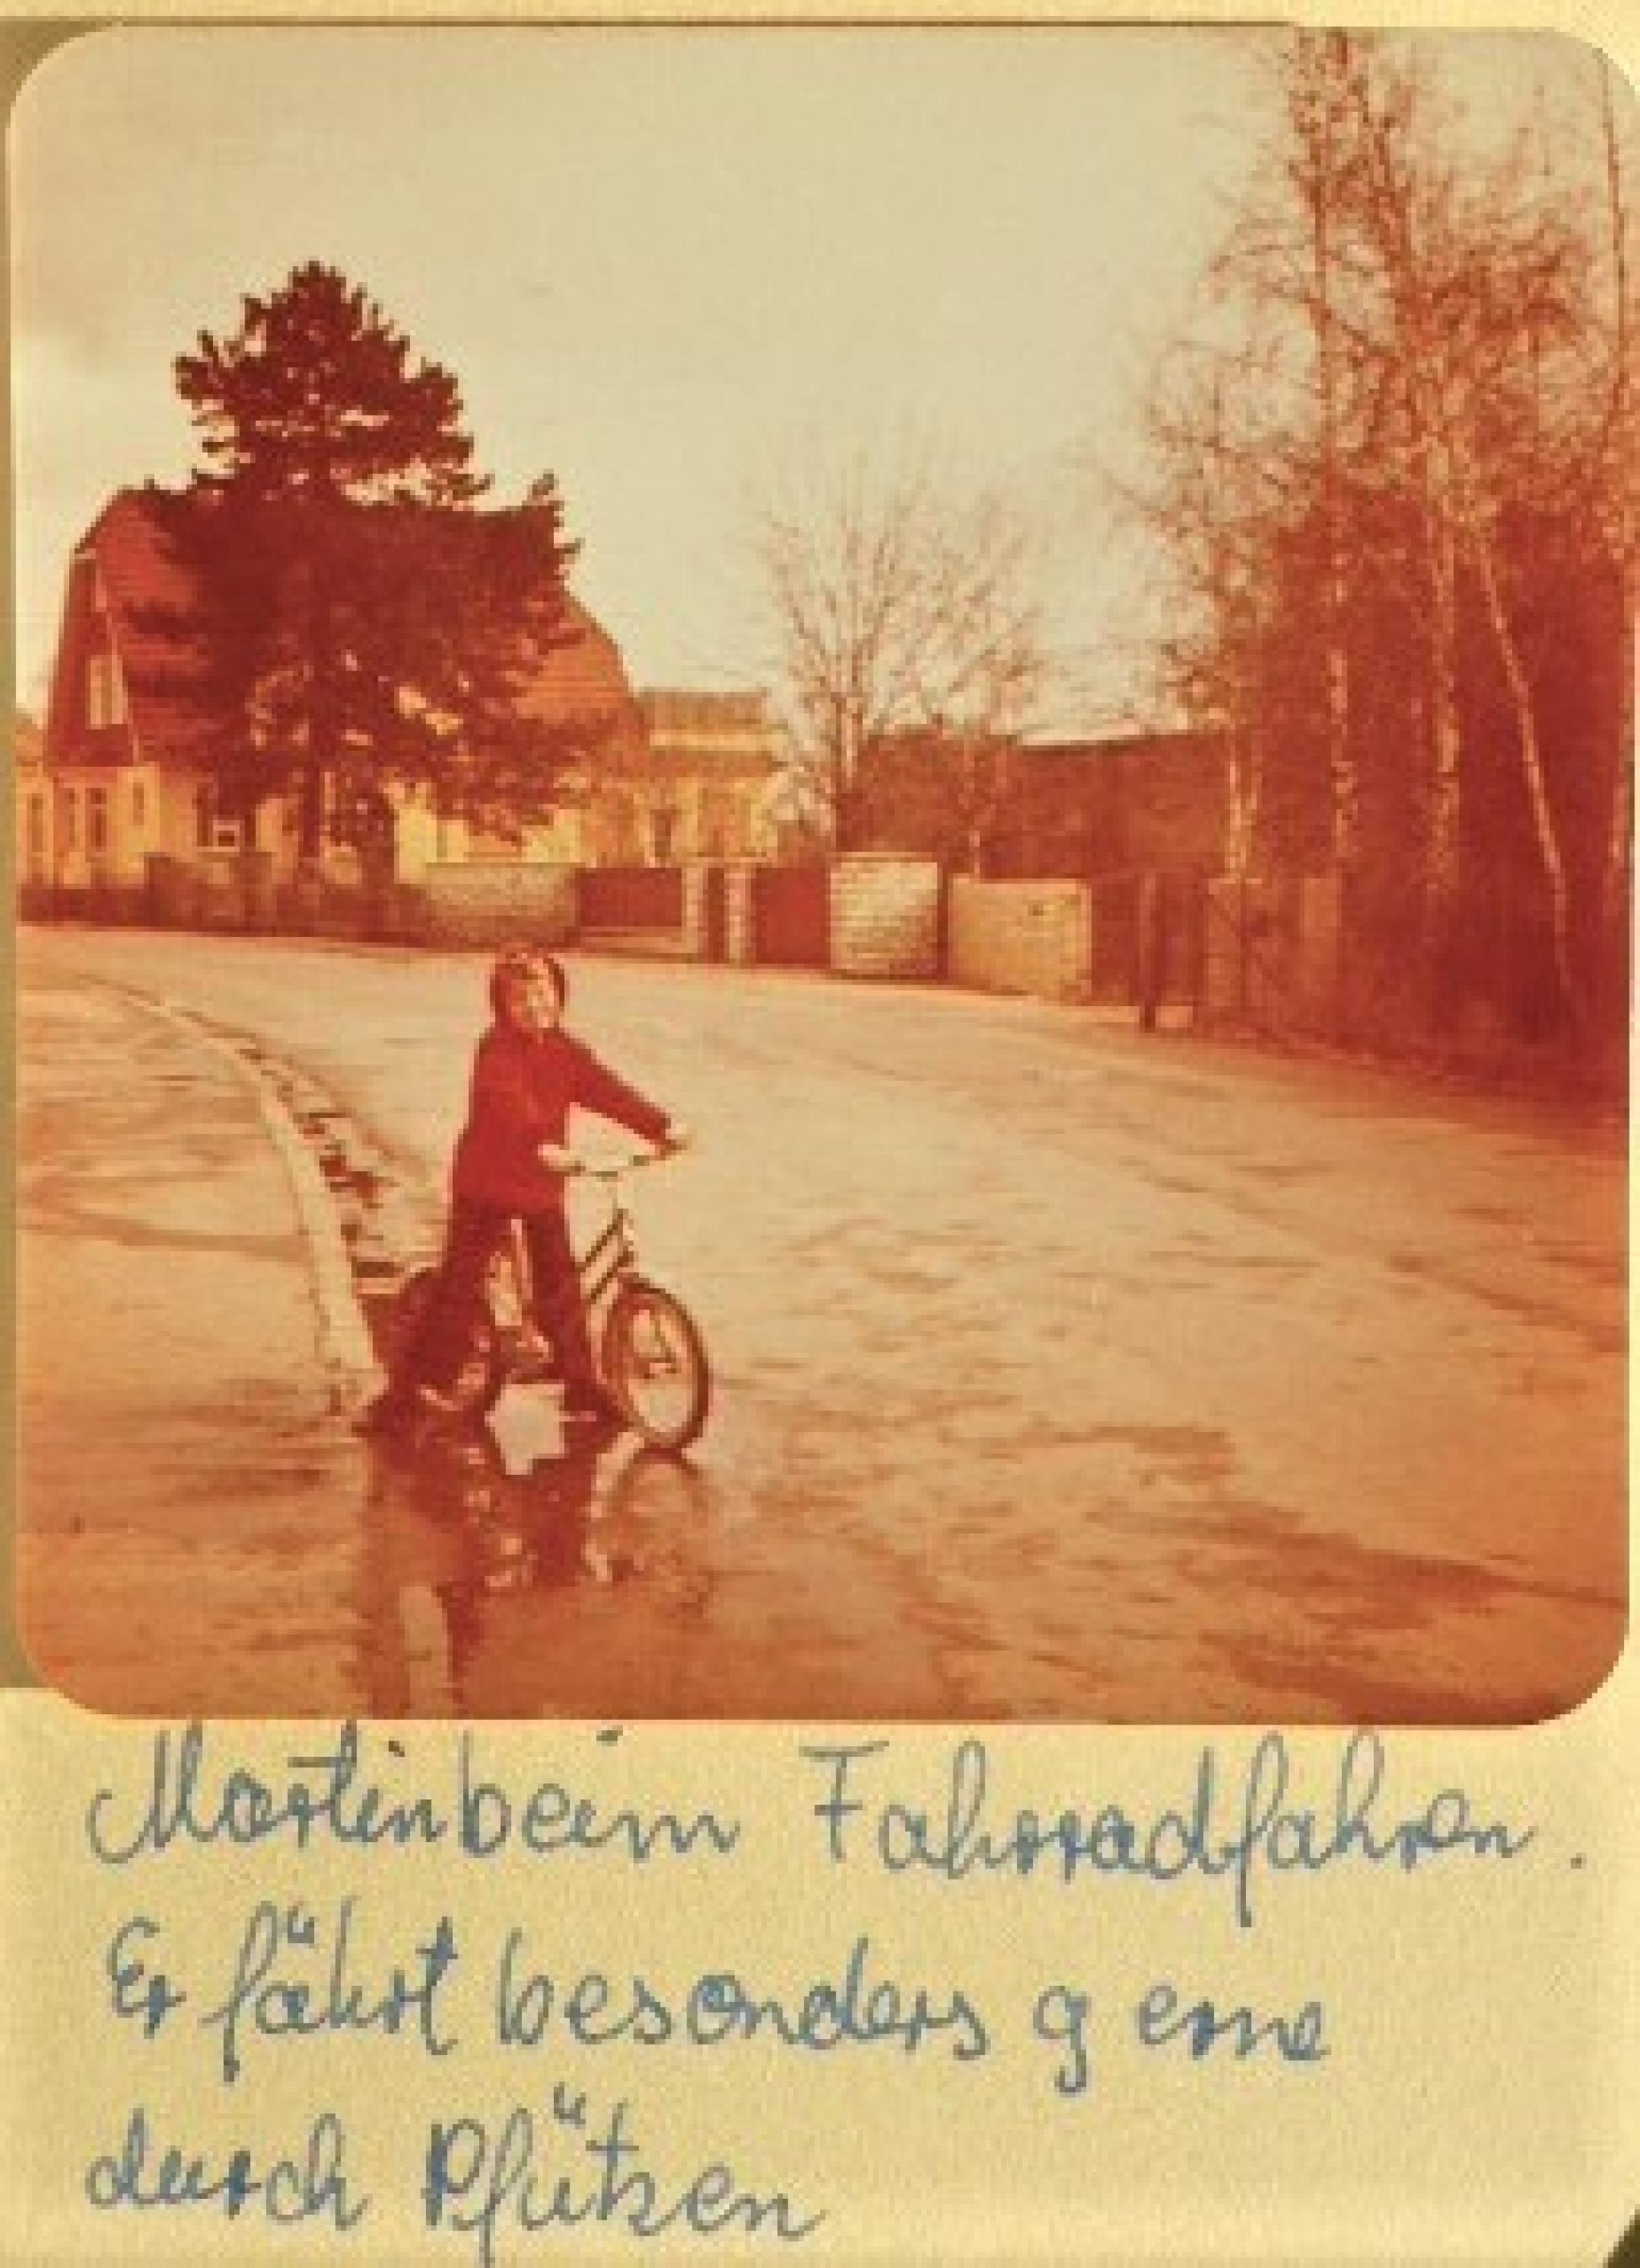 Kleinkind Martin C Roos auf seinem Erstrad, Aufnahme im Familienalbum handschriftlich ergänzt durch den Satz „Er fährt besonders gern durch Pfützen“.